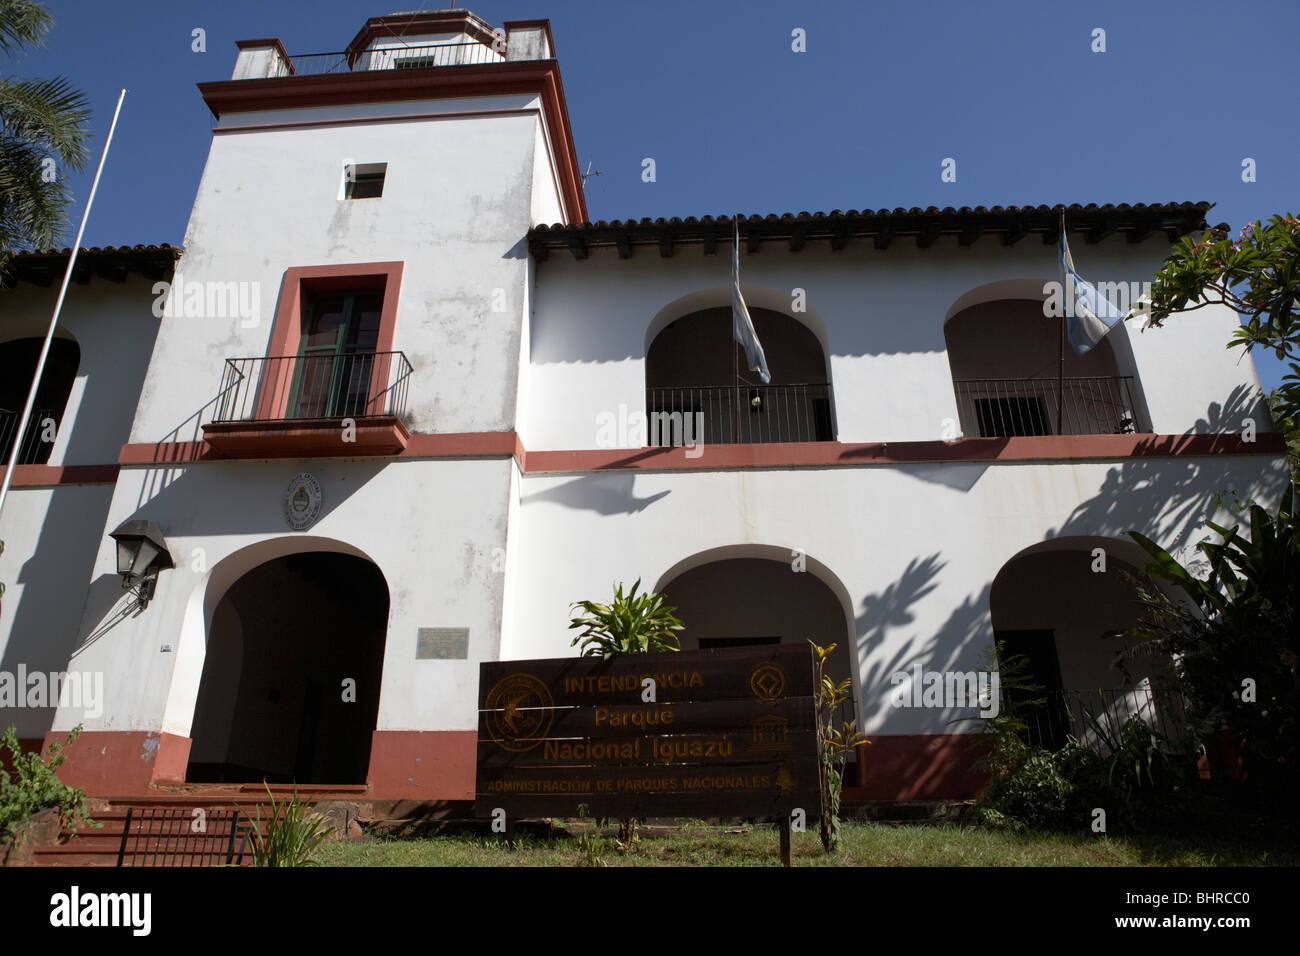 Intendencia de la parque iguazu national d'inspection du parc national iguazú, république de l'Argentine, l'Amérique du Sud Banque D'Images